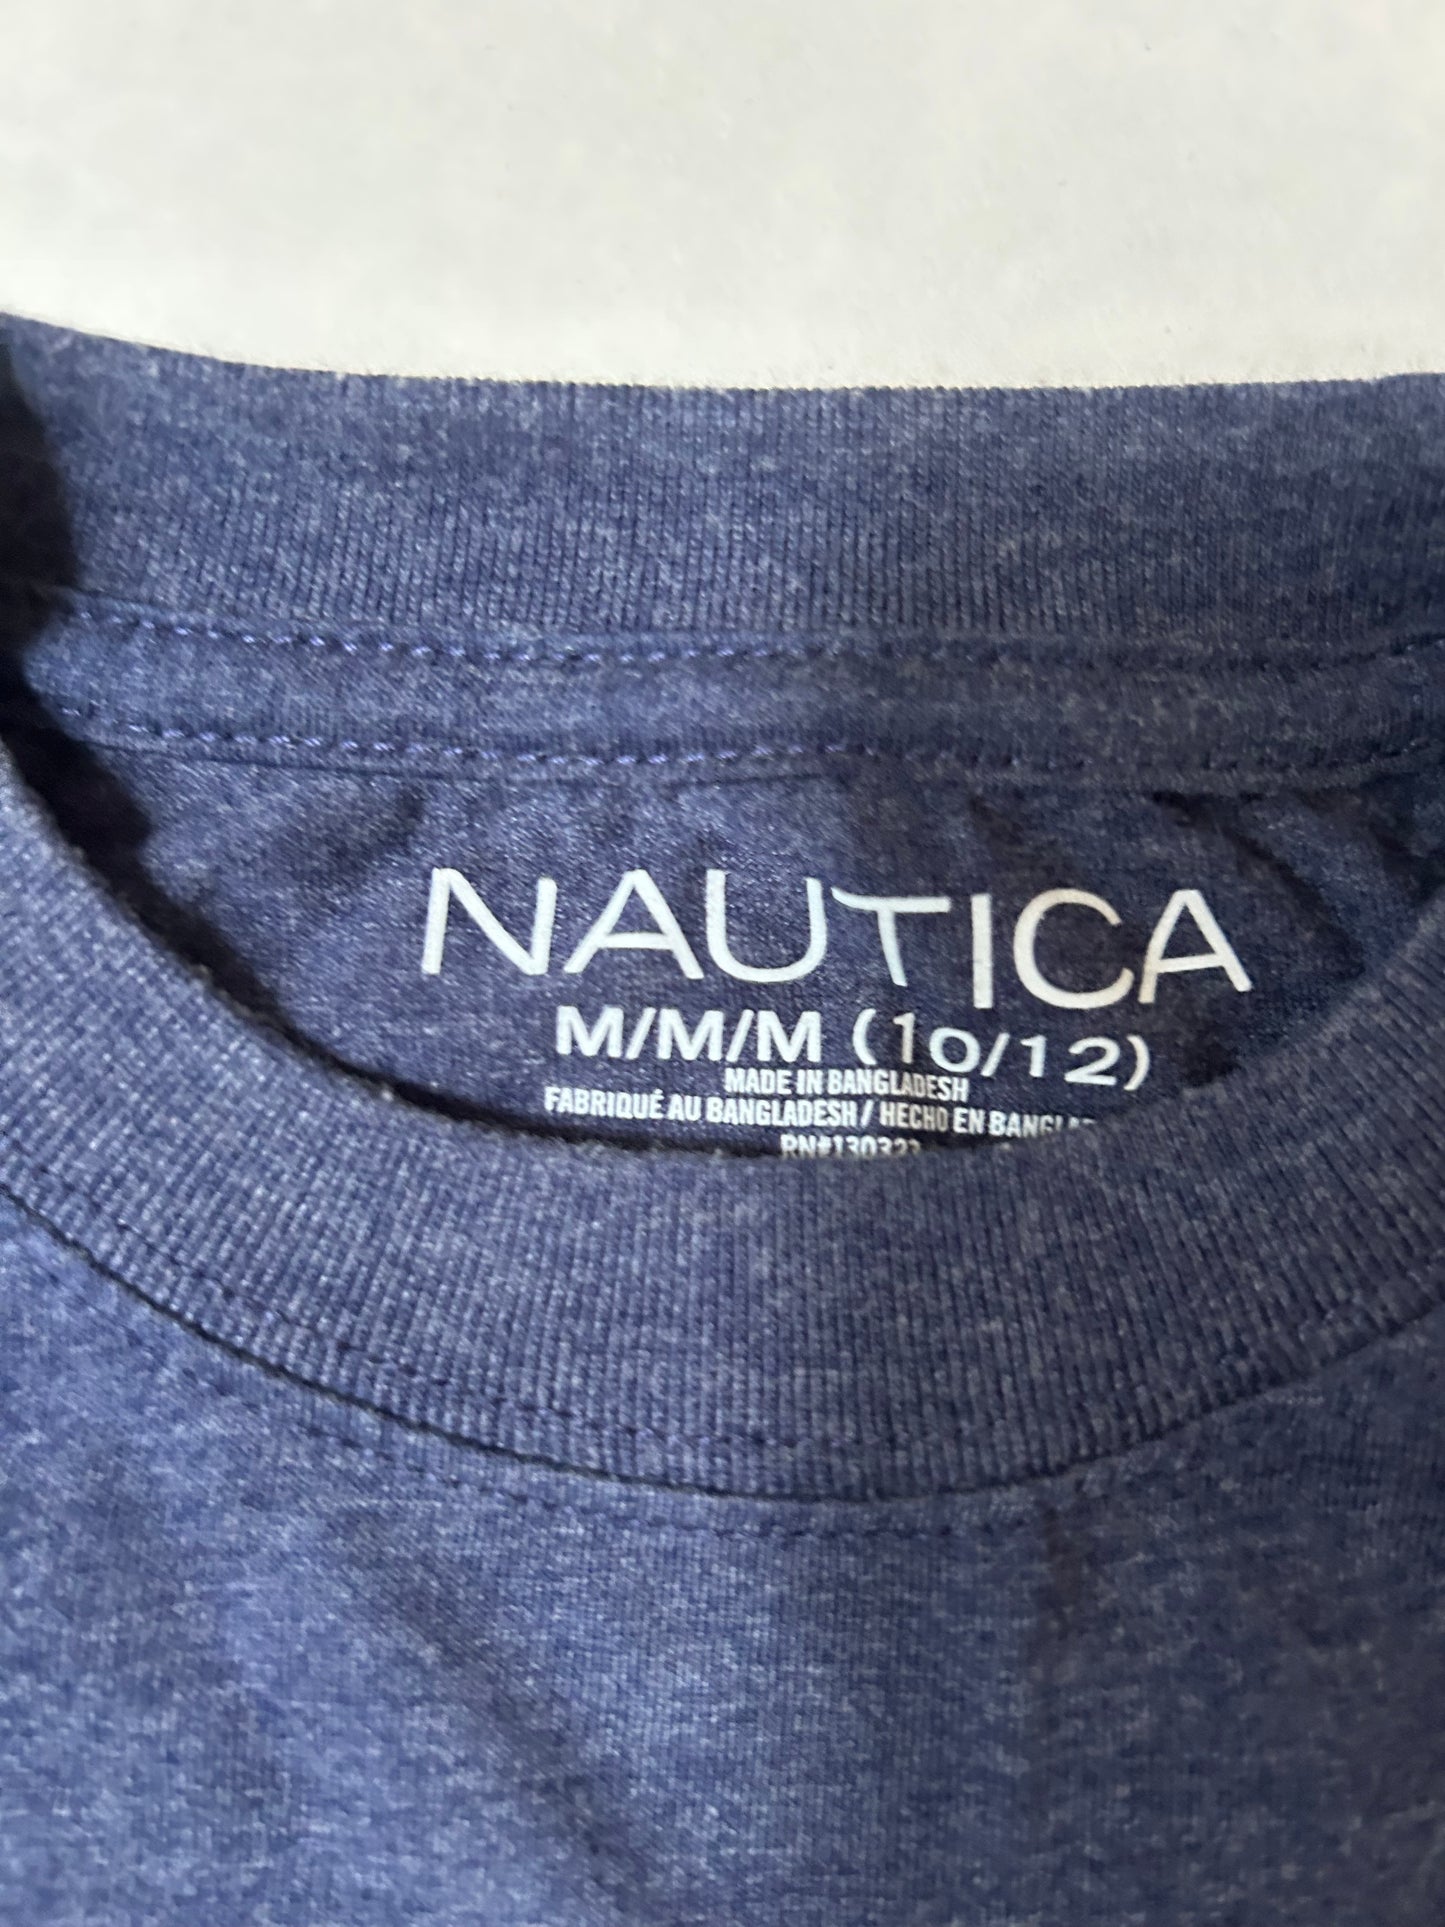 Boys  10/12 Medium Nautica American Flag Navy tshirt